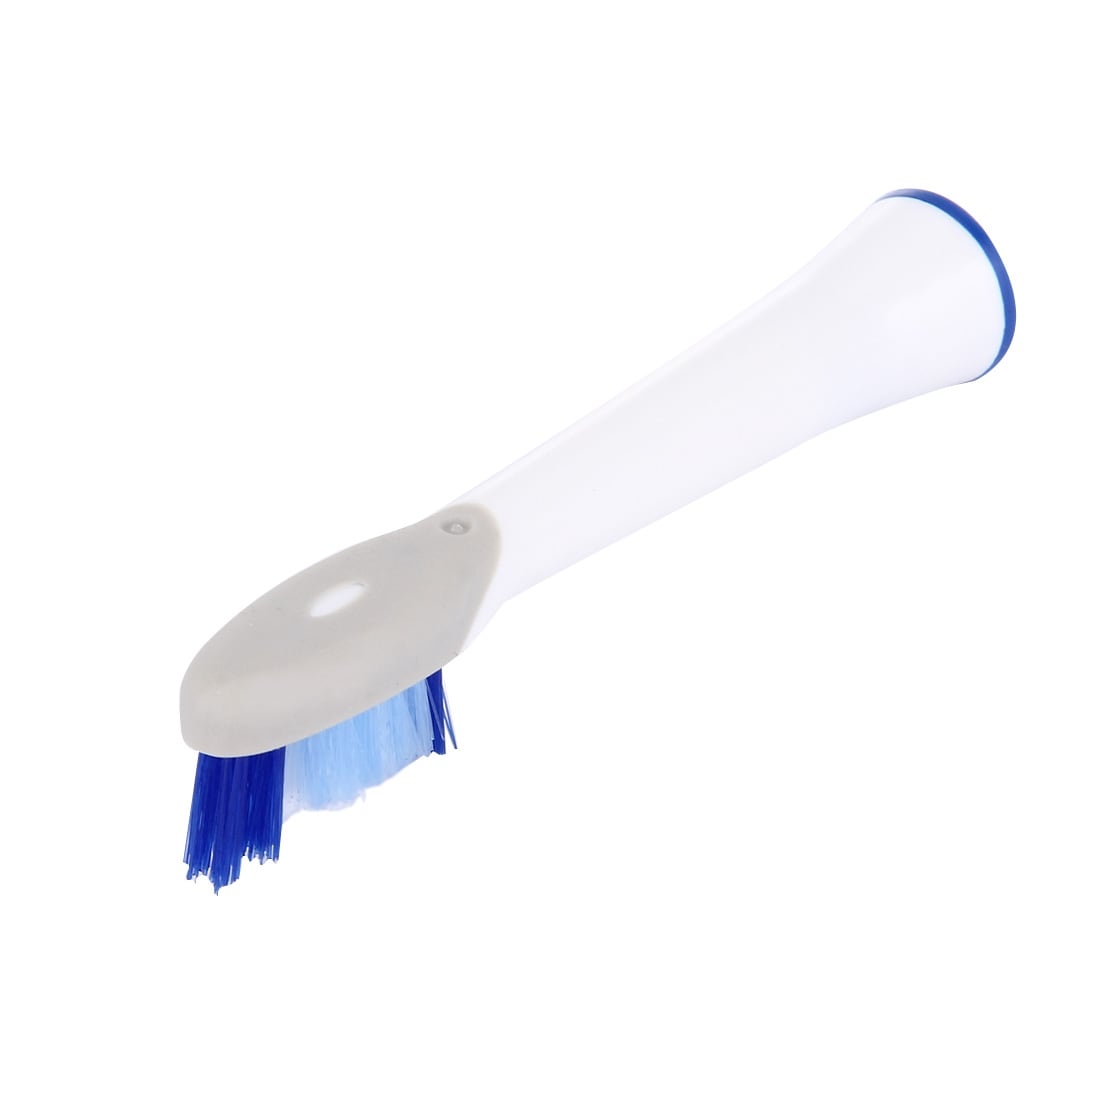 Oral-B yhteensopiva hammasharjan pää  - 4 Pakkaus